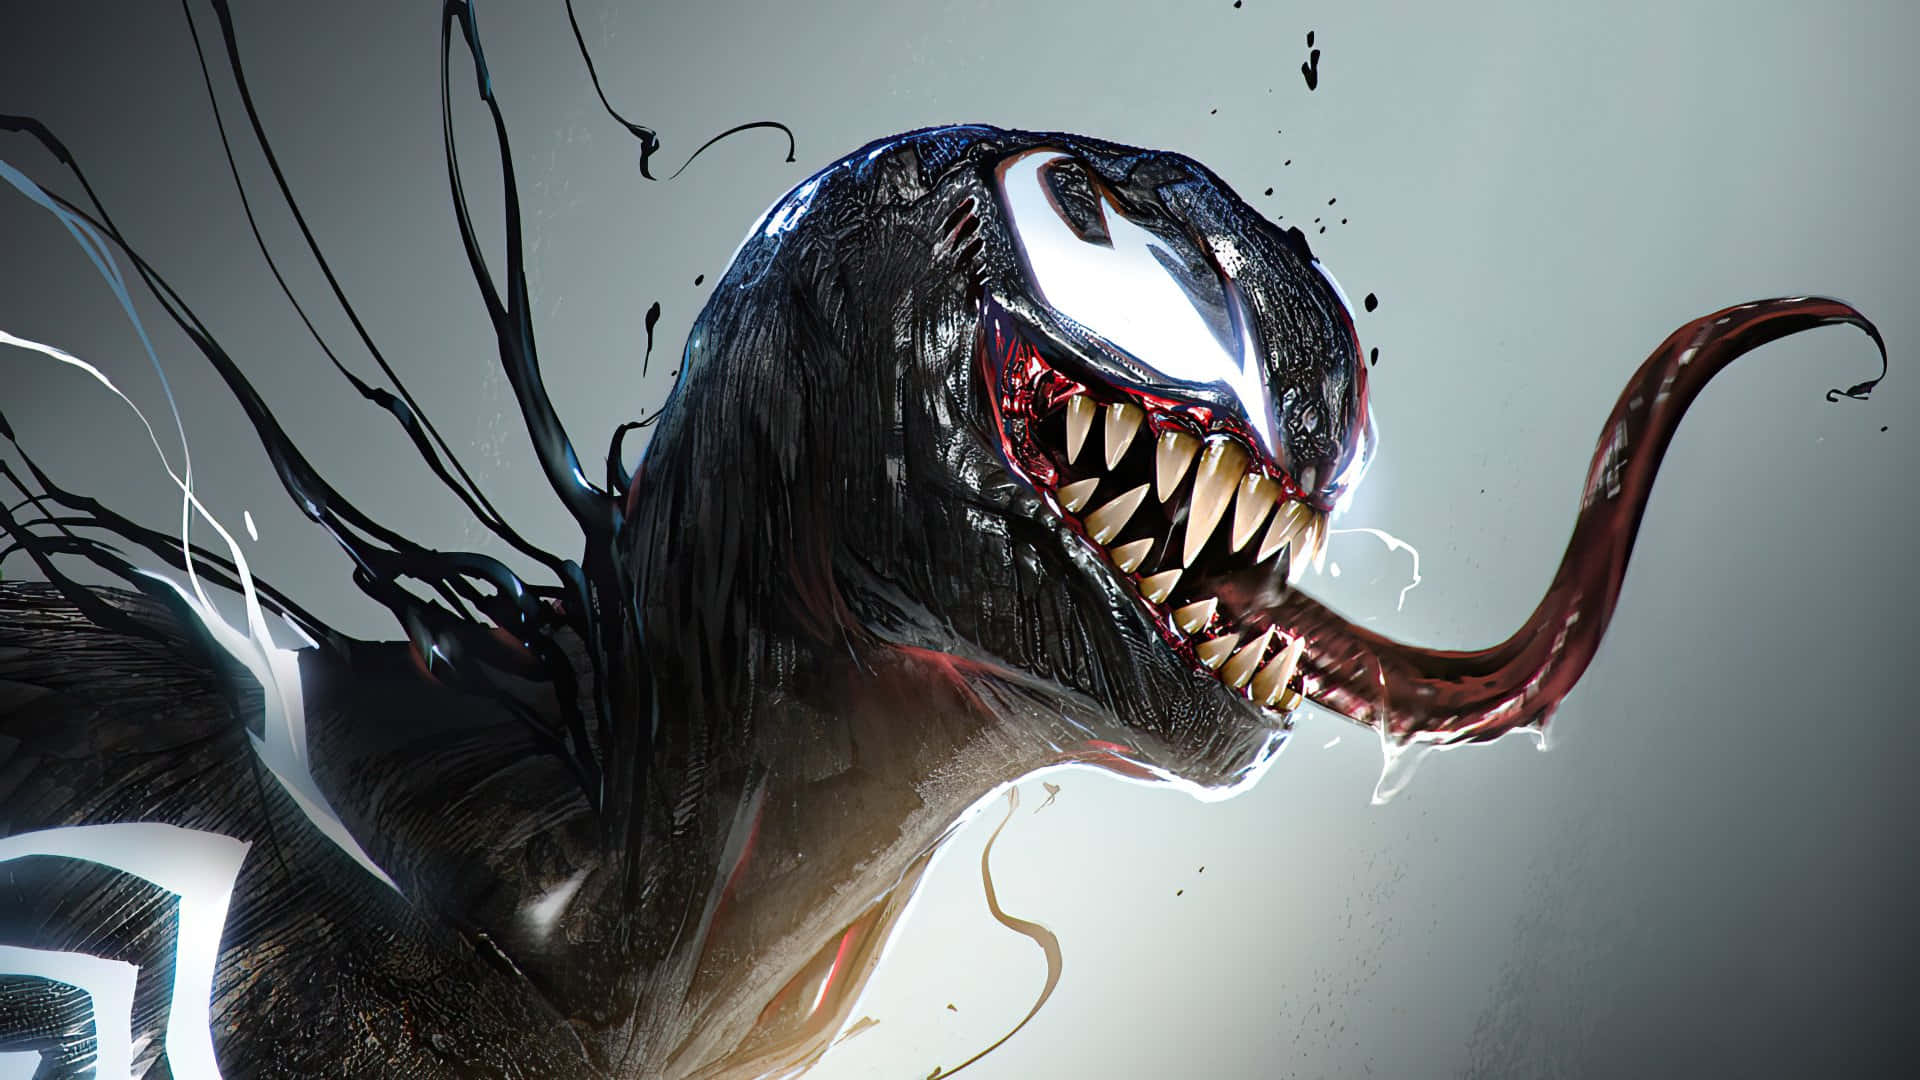 Dieikonische Figur Von Marvel, Venom, Mit Einem Bedrohlichen Blick.